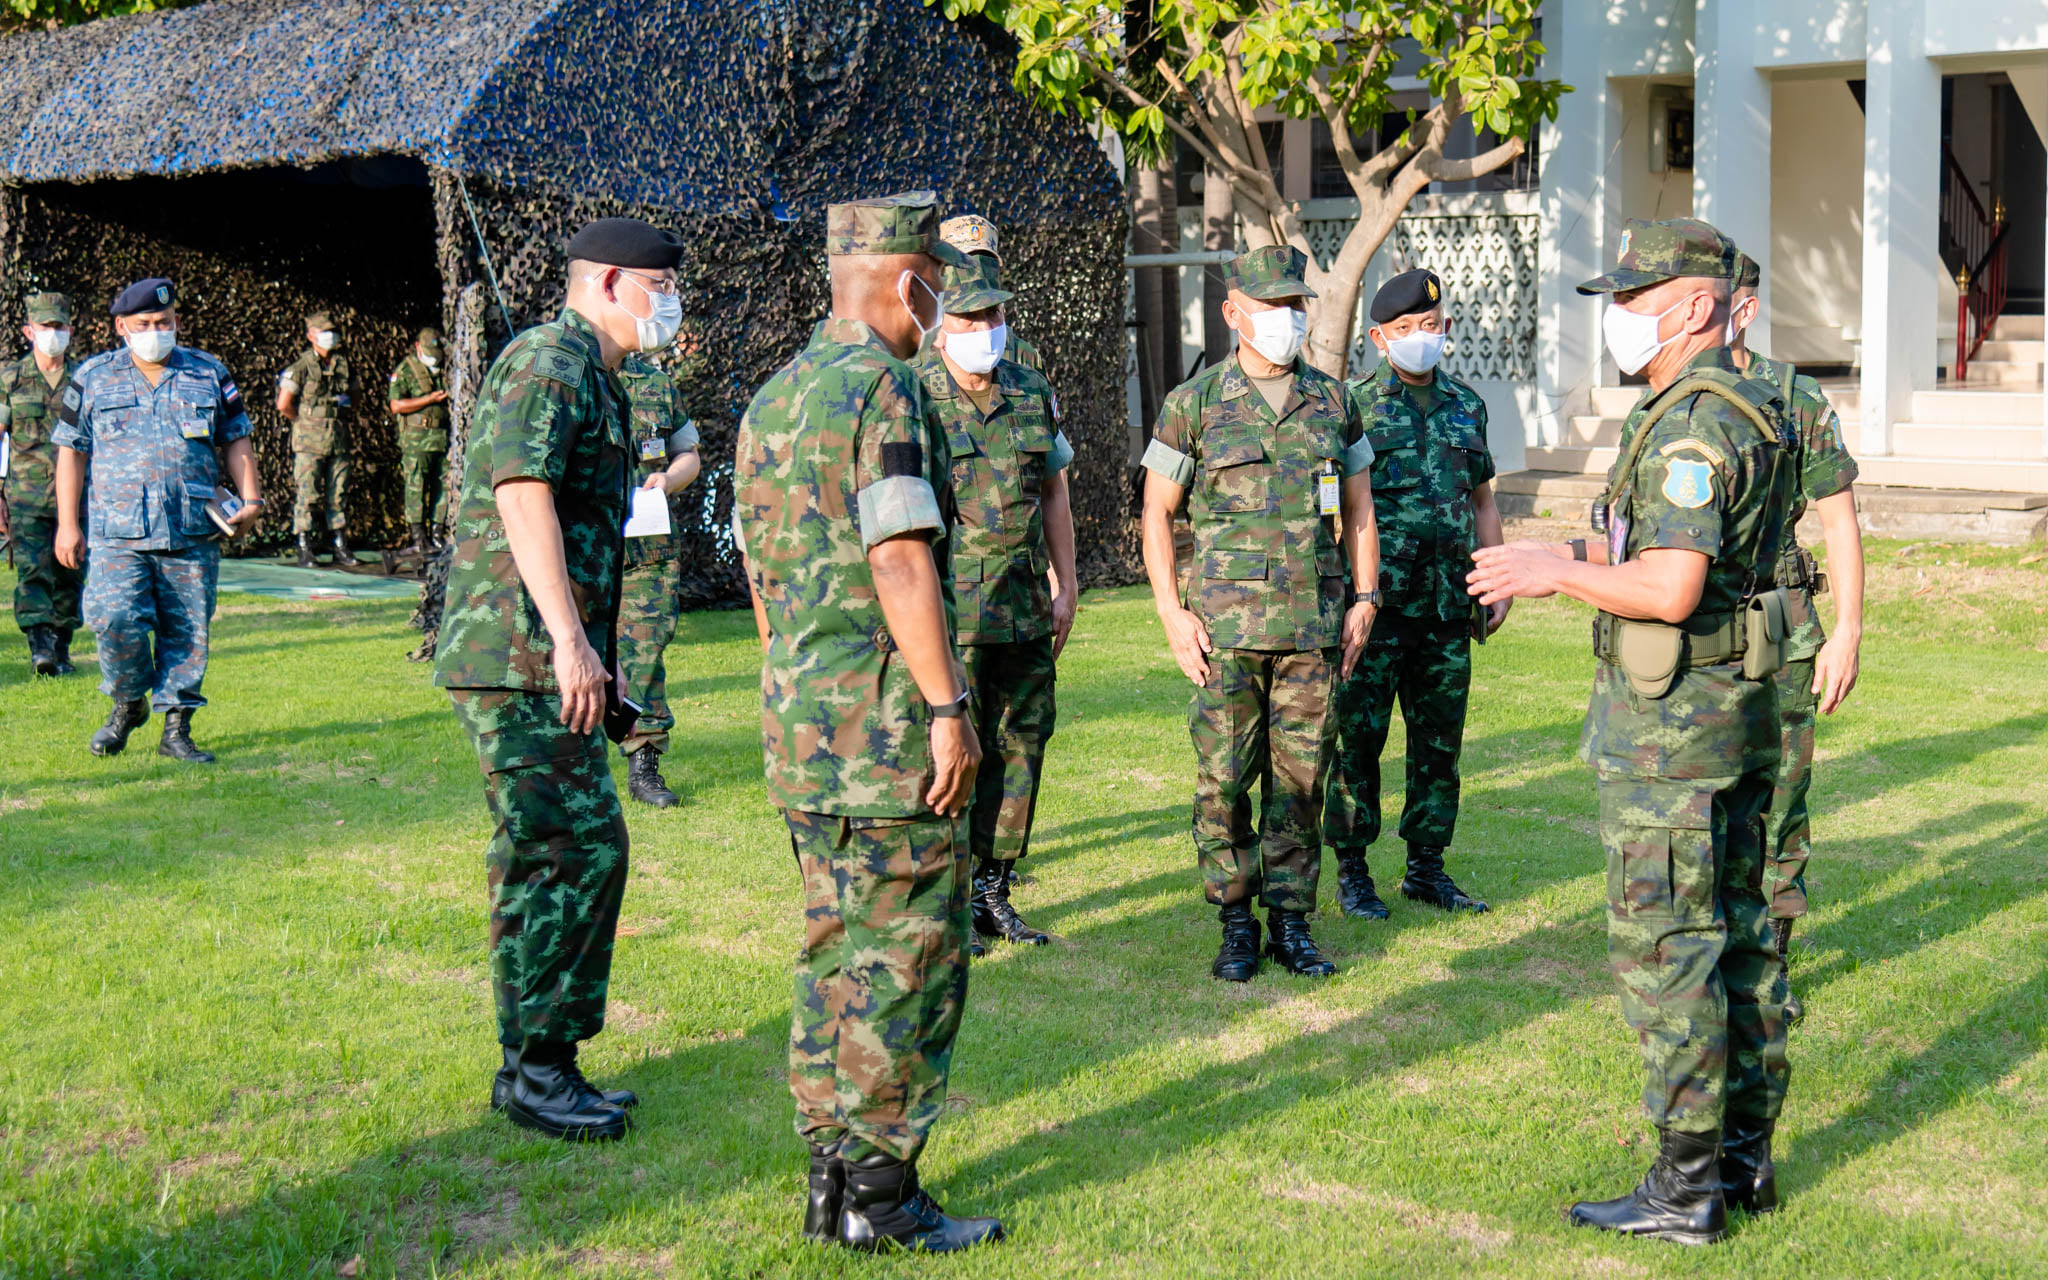 ผู้บัญชาการทหารสูงสุด เดินทางตรวจเยี่ยมการฝึกเตรียมการ นักเรียนนายร้อย ในการฝึกร่วมหน่วยทหารรักษาพระองค์/เหล่าทัพ ประจำปี ๒๕๖๔